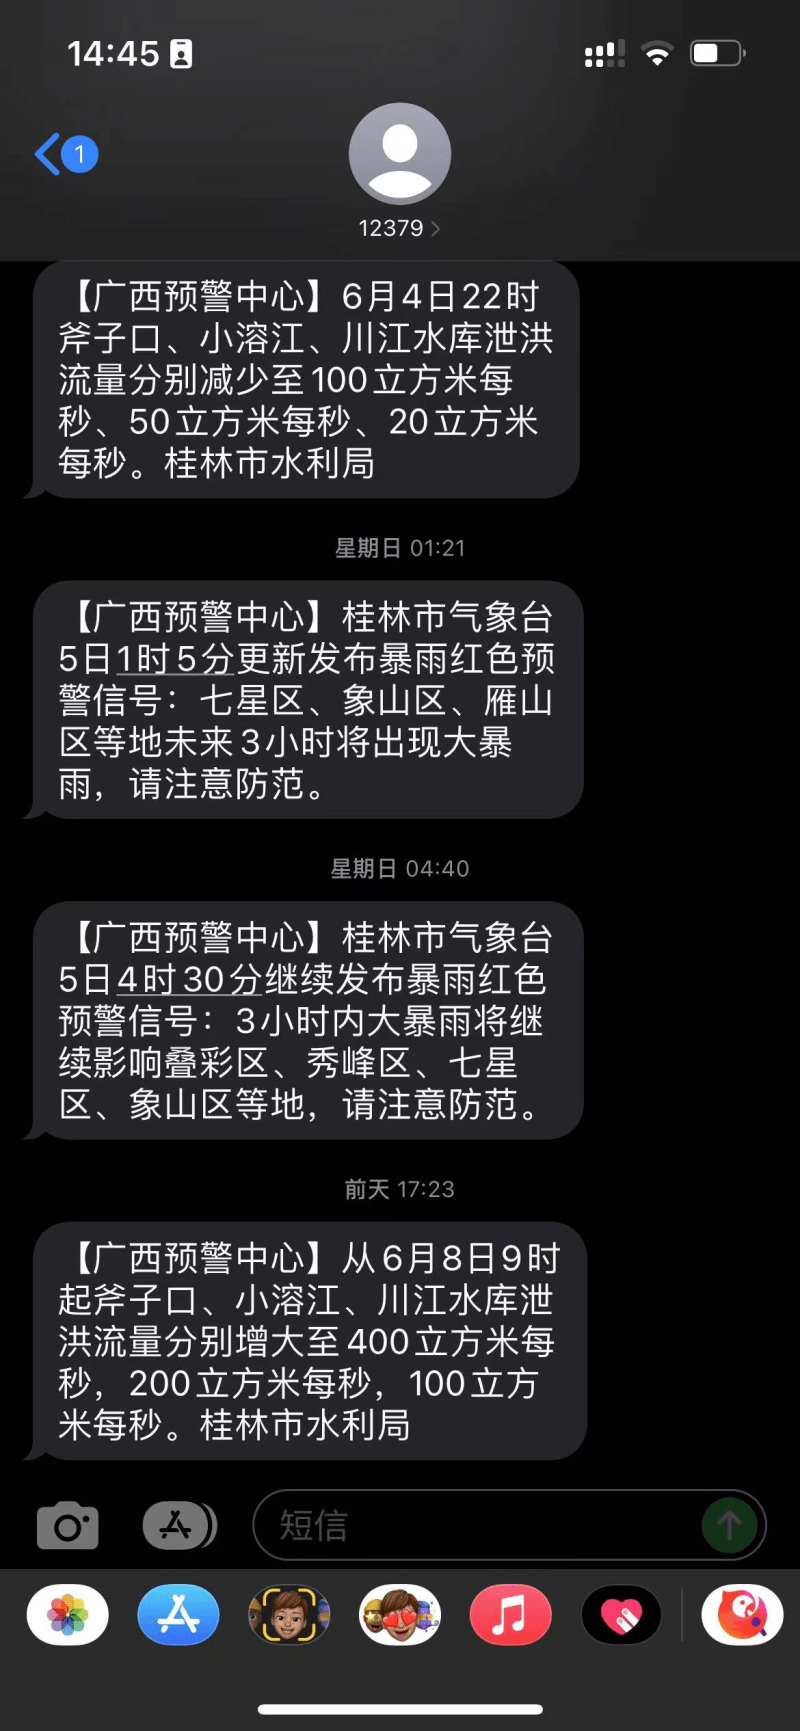 【广西预警中心】桂林市气象台5日4时30分继续发布暴雨红色预警信号:3